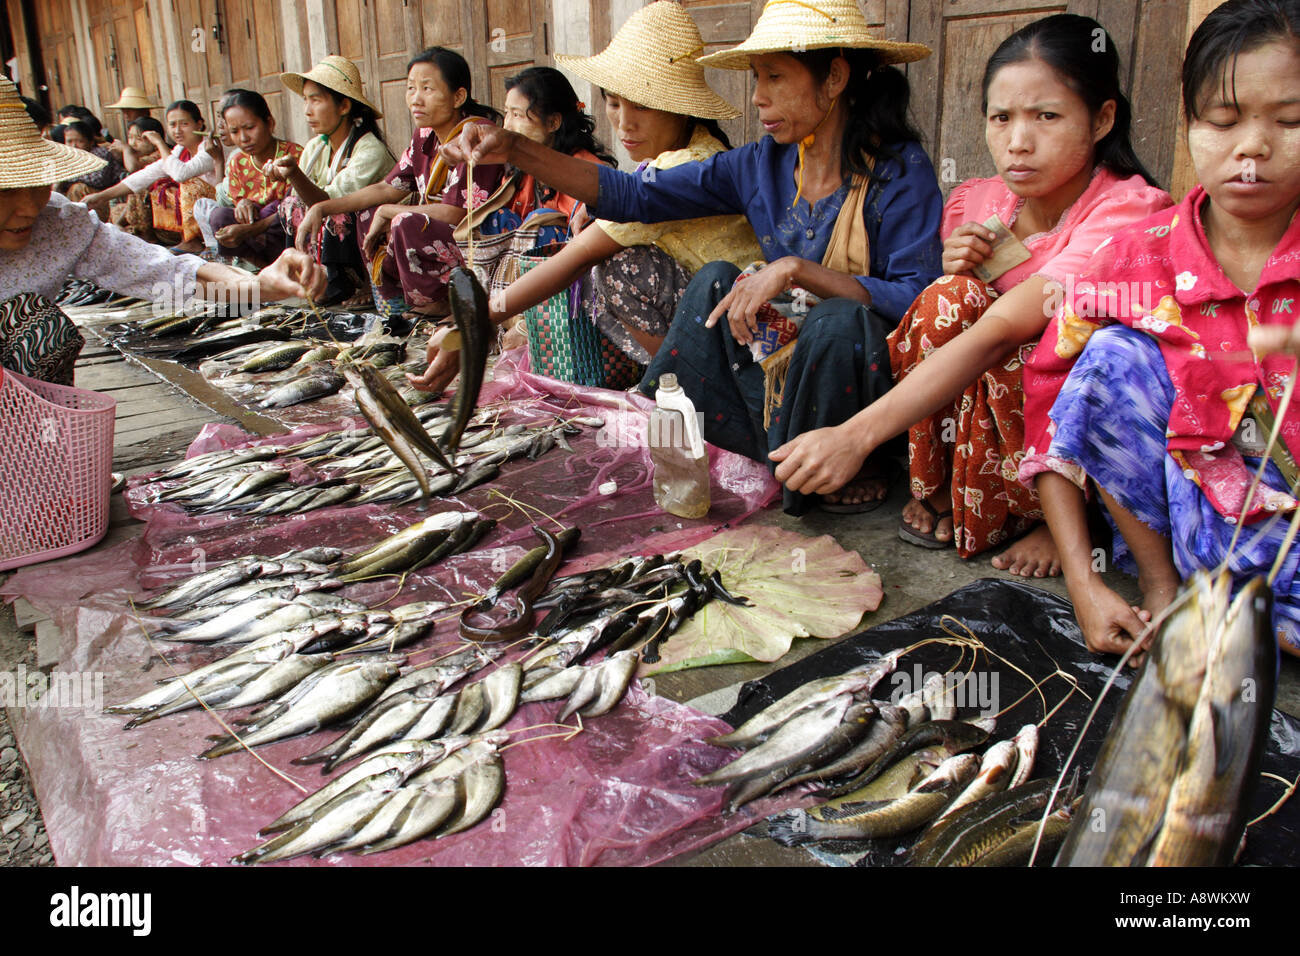 Asia, Myanmar, Nyaungshwe, Burmese women selling fish at morning market Stock Photo